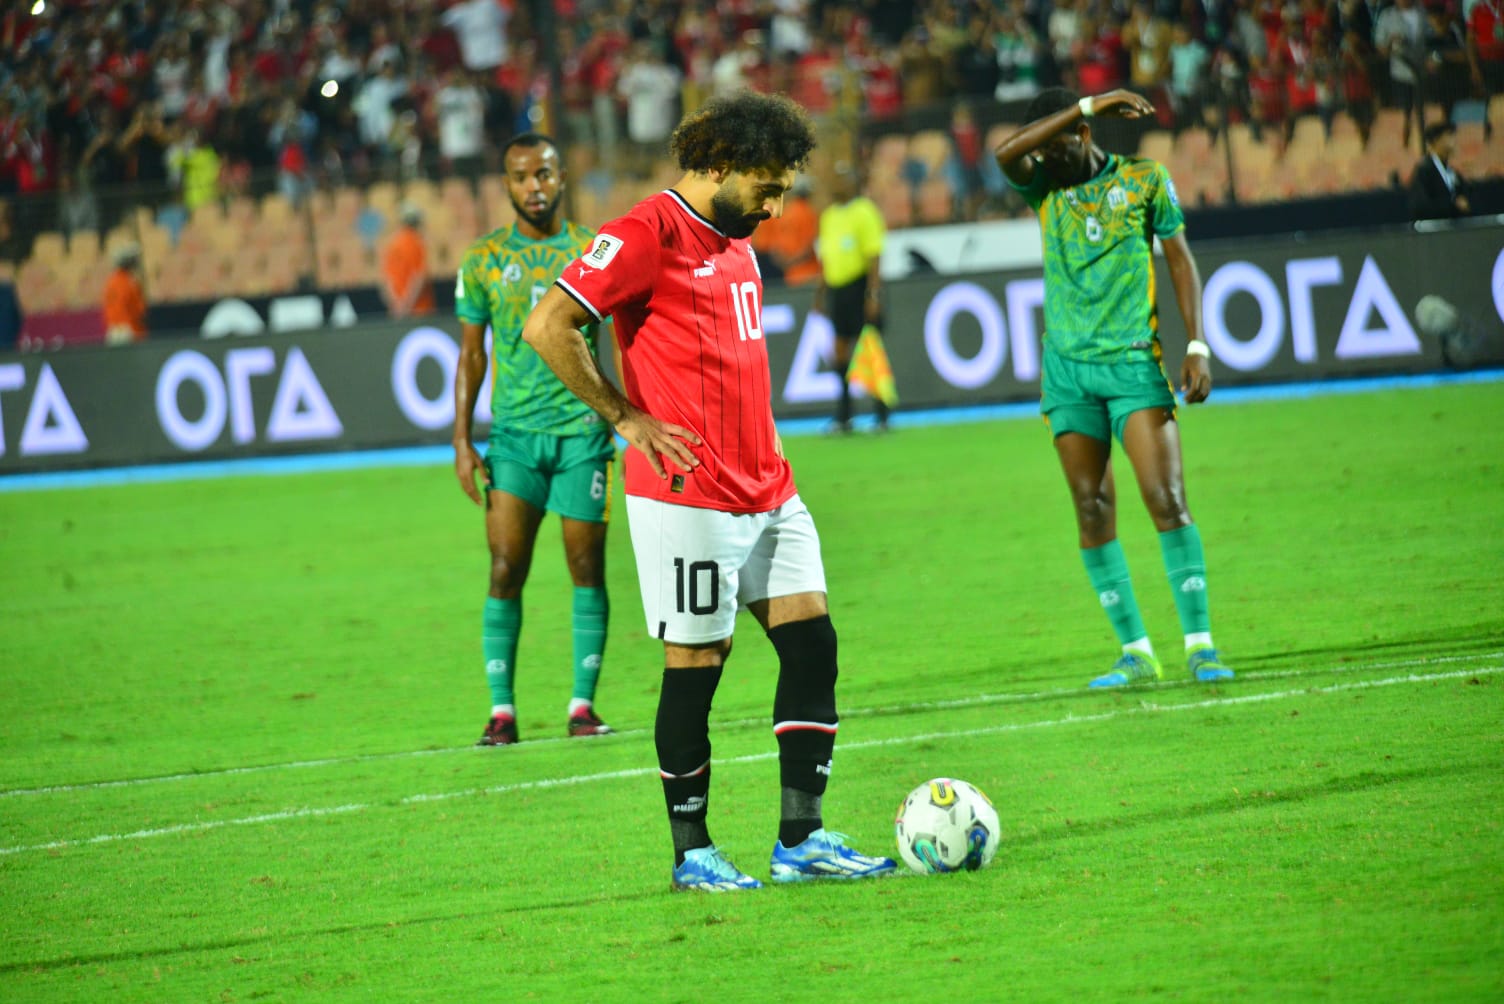 الجماهير تدعم فلسطين قبل انطلاق مباراة مصر وموزمبيق 2